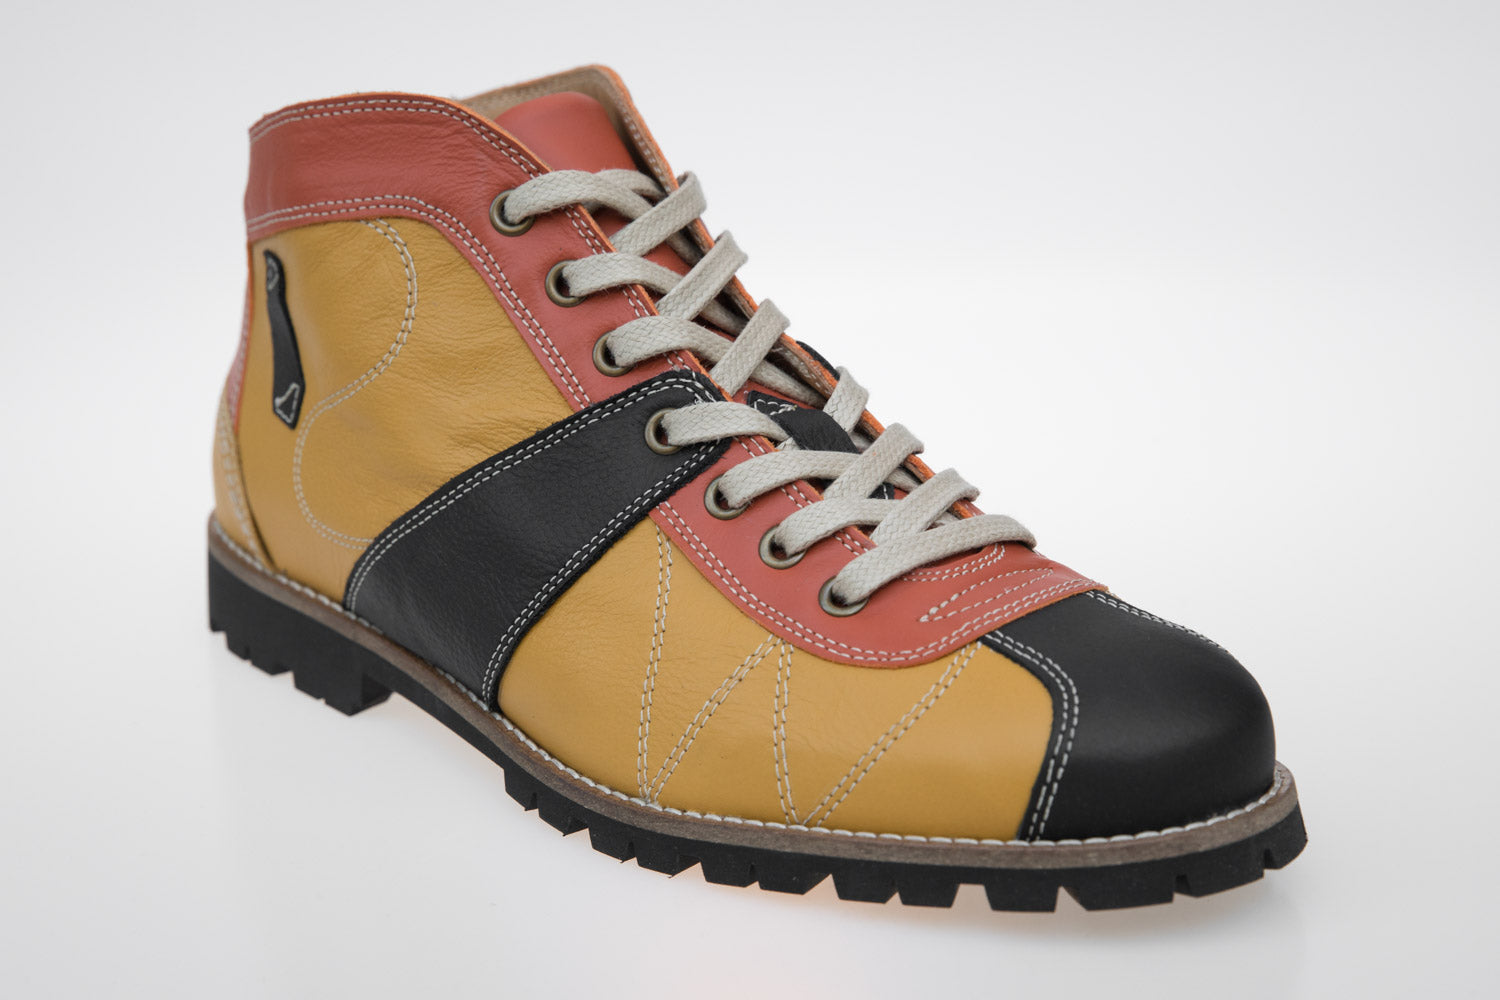 "The Kicker" Leder Retro Sneaker - senfgelb/orange/schwarz - Vibram®